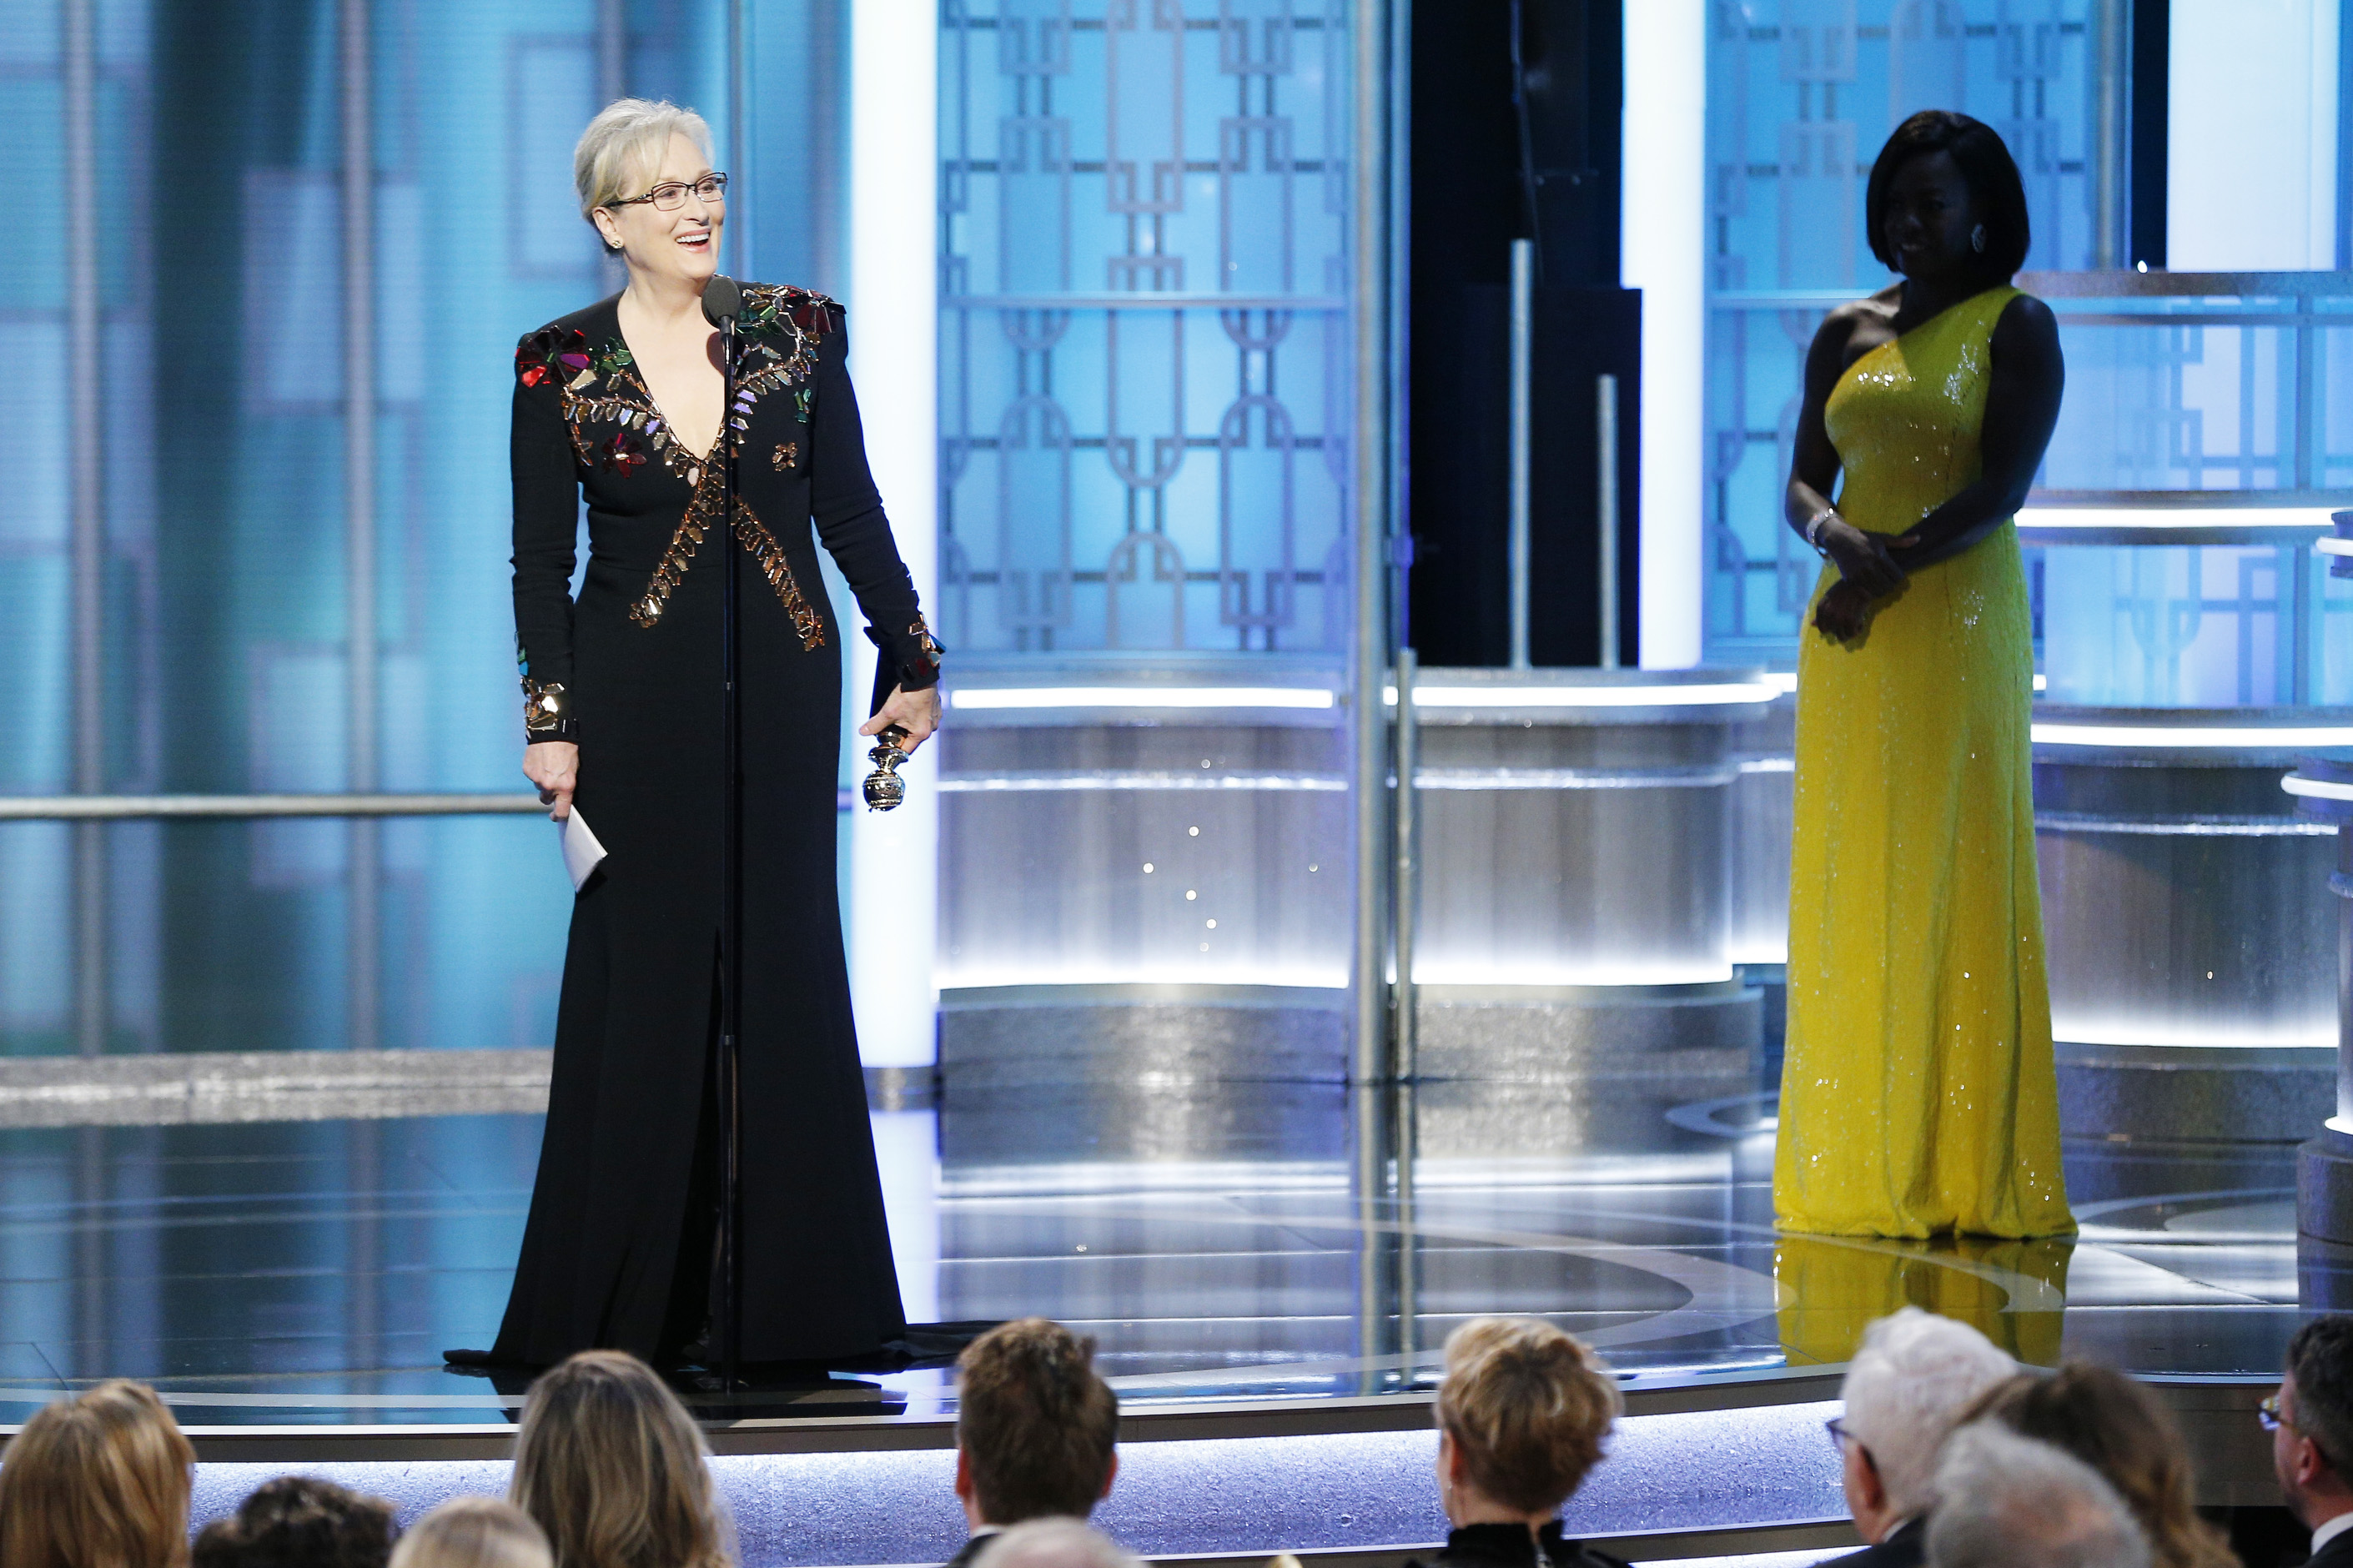 Discursul lui Meryl Streep despre care vorbeste toata America. Cele mai tari momente si gafe de la Globurile de Aur 2017